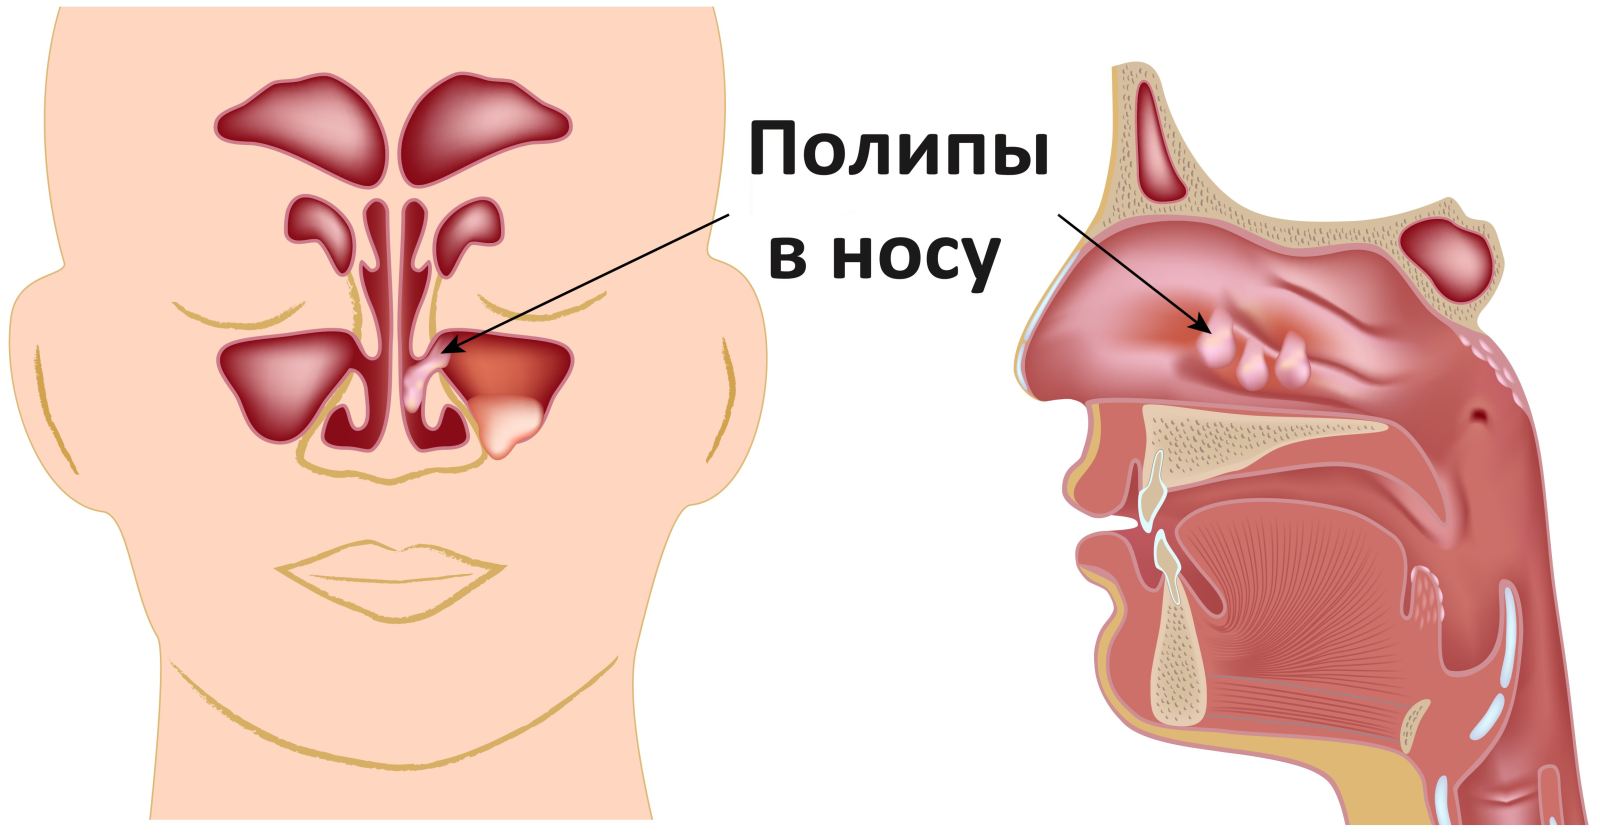 polipivnosuprichinipoyavleniyasimptomile F1756E60 - ОРВИ (острая респираторная вирусная инфекция) – заболевание дыхательных путей